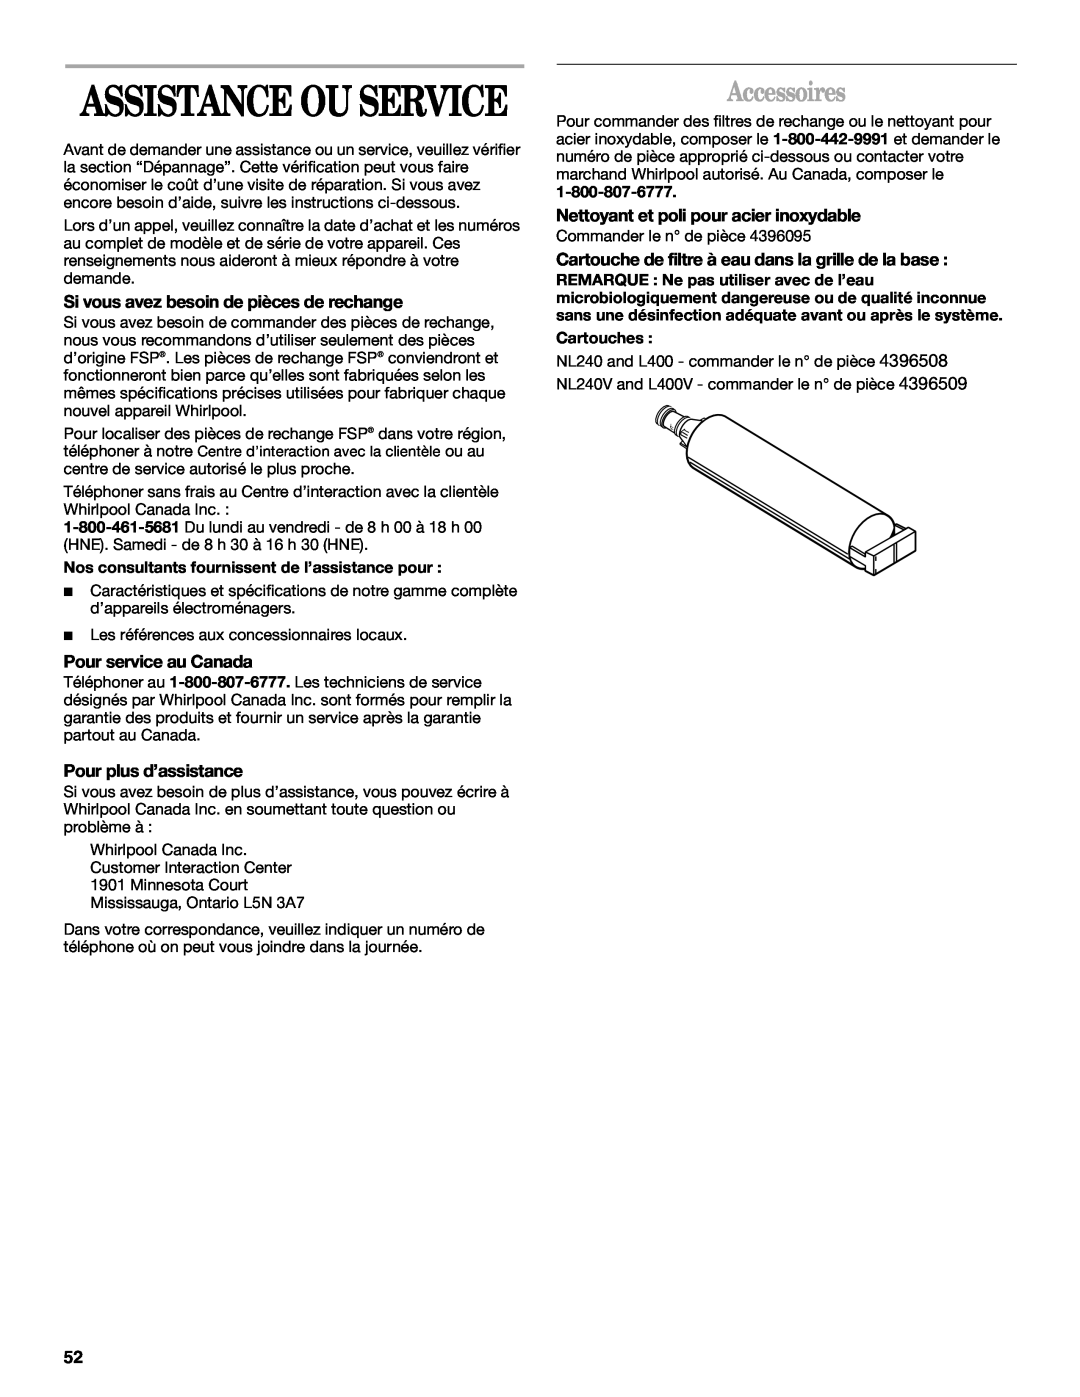 Whirlpool KTRA19EMBT00 manual Accessoires, Si vous avez besoin de pièces de rechange, Pour service au Canada, Cartouches 